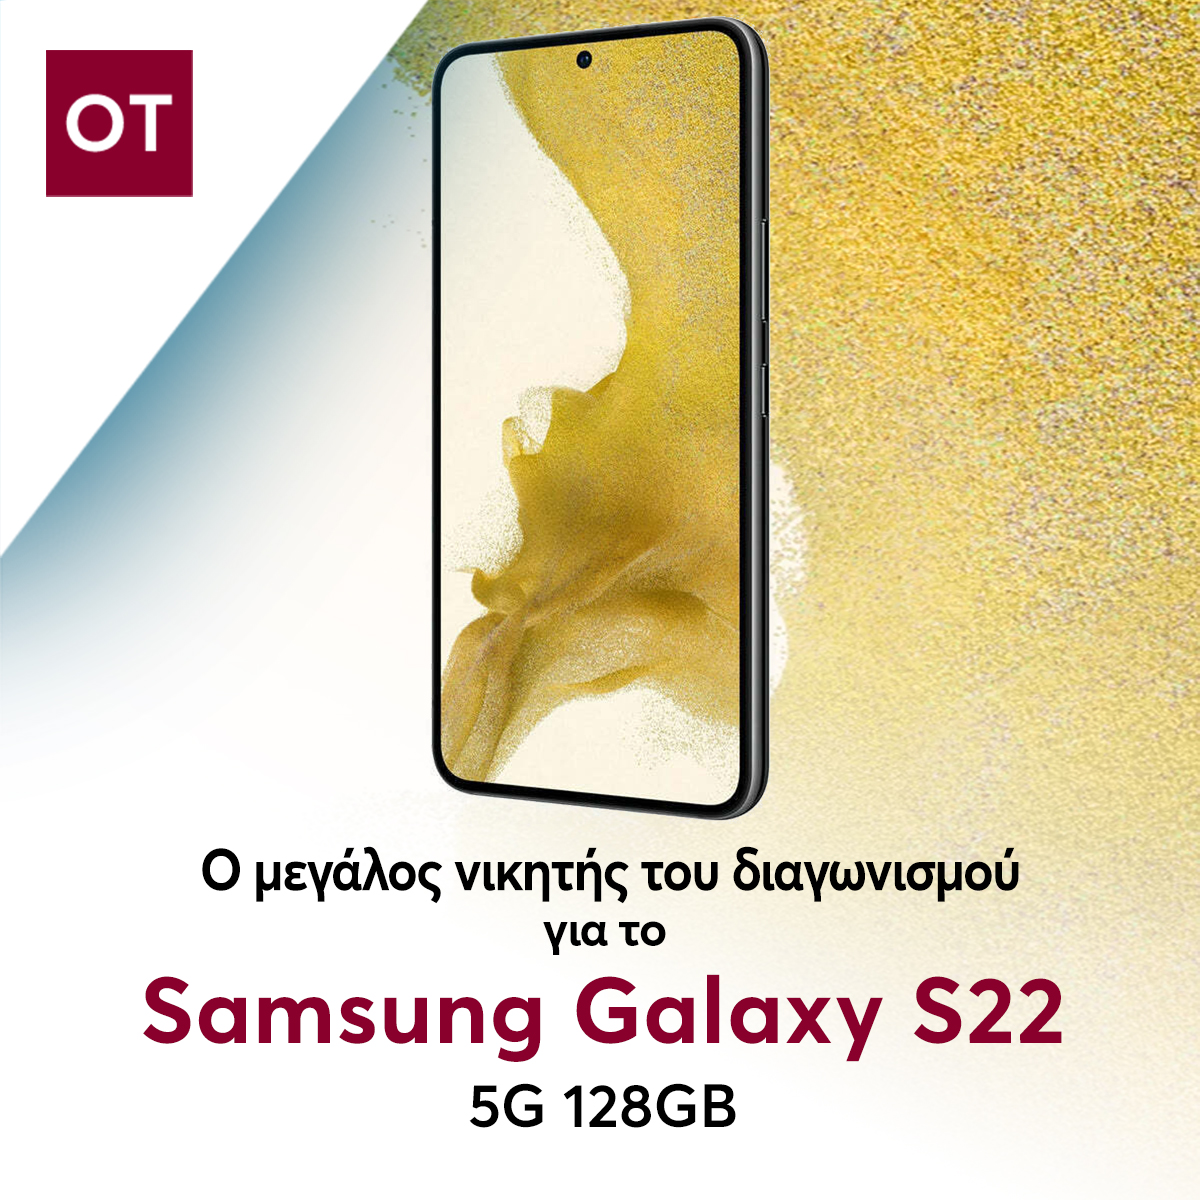 Ο νικητής του διαγωνισμού του ot.gr με έπαθλο ένα Samsung Galaxy S22 5G 128GB